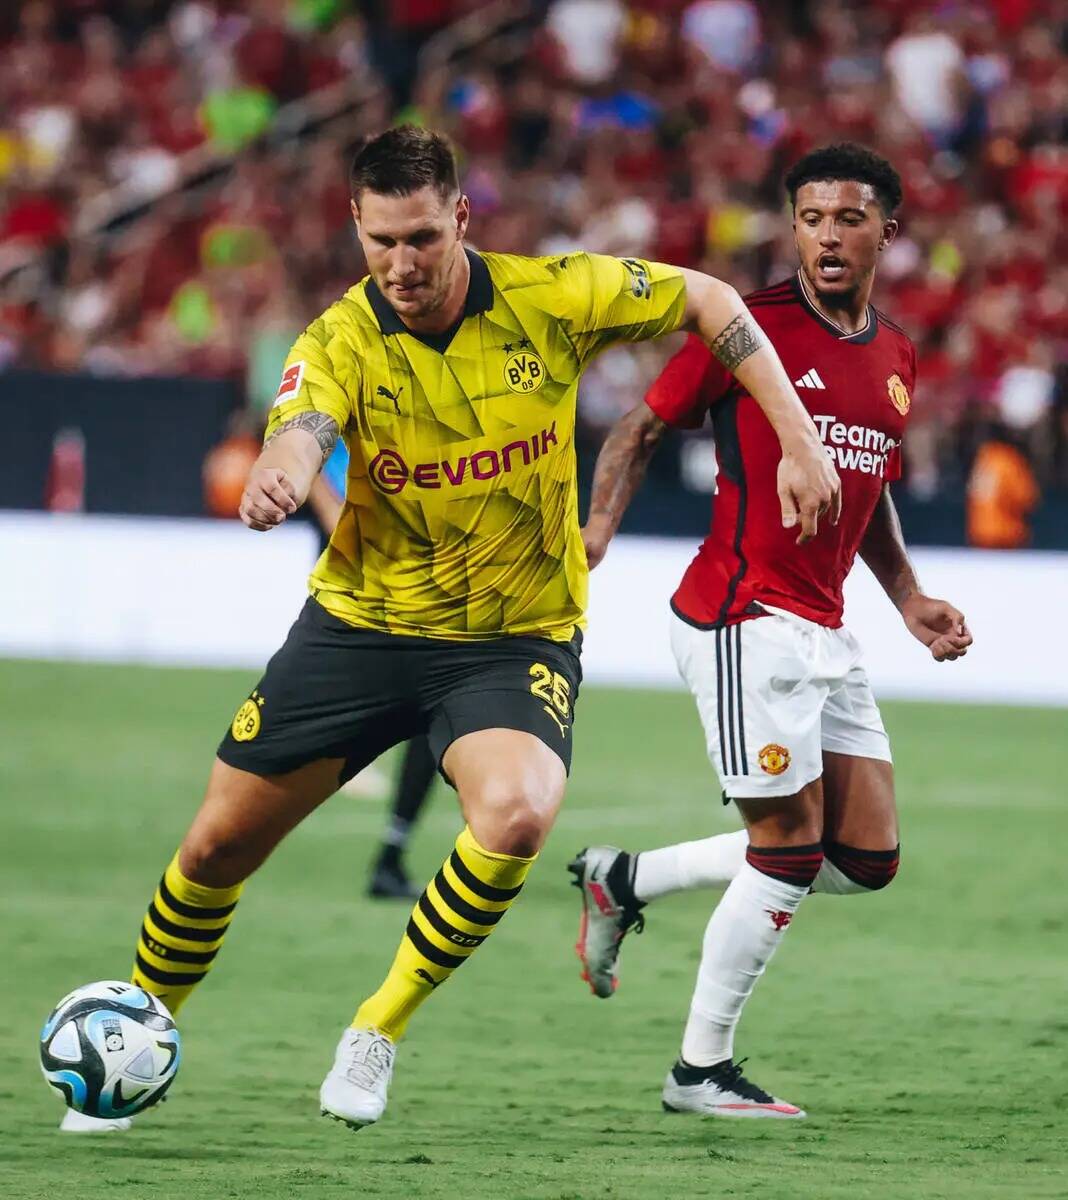 El defensa del Borussia Dortmund Niklas Sule (25) chuta el balón durante un partido contra el ...